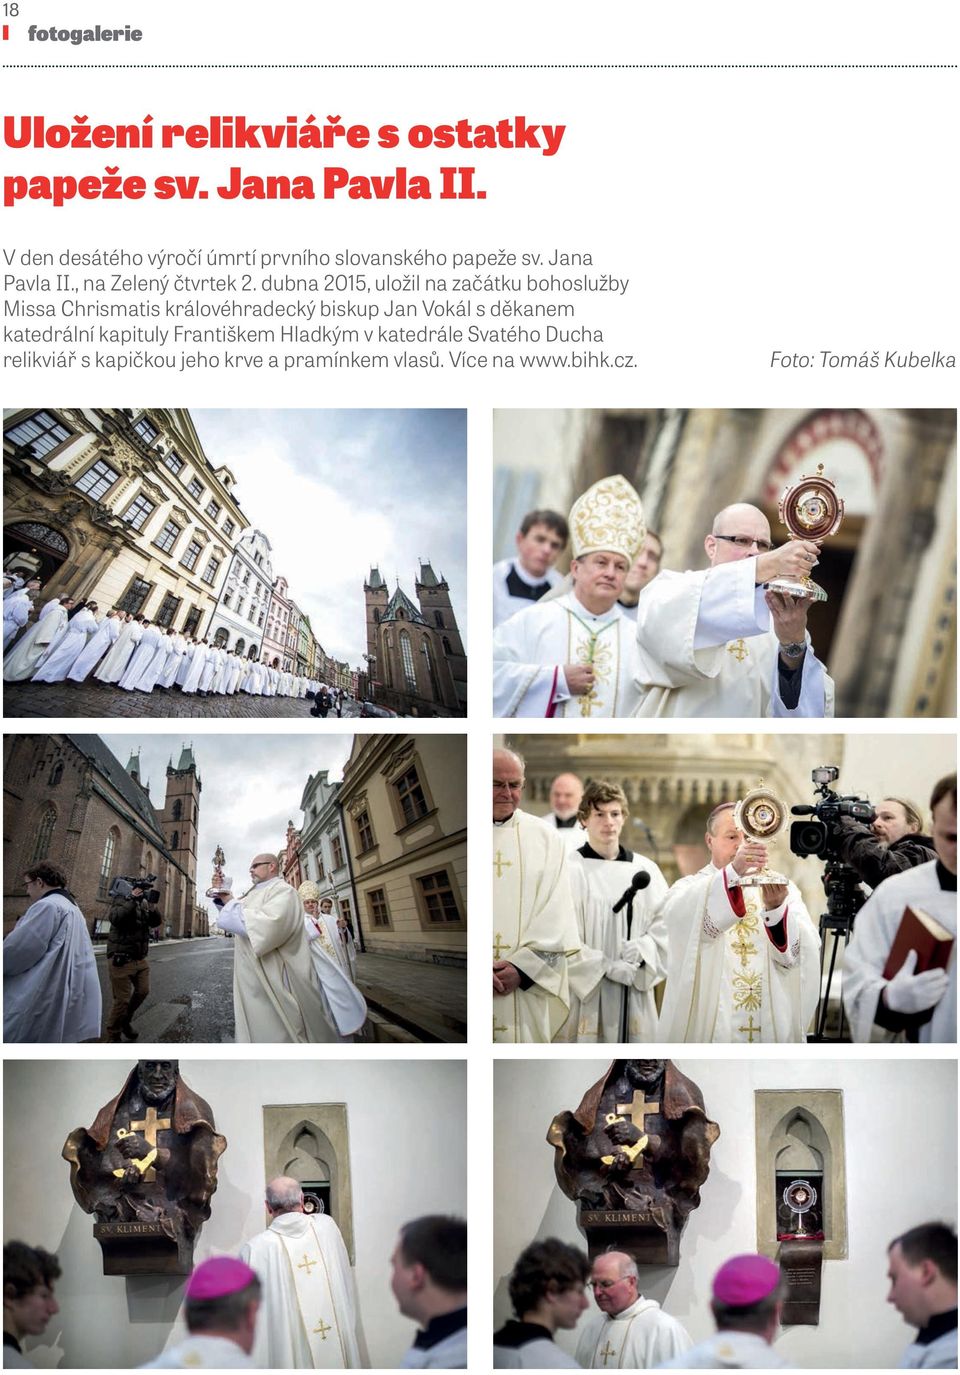 dubna 2015, uložil na začátku bohoslužby Missa Chrismatis královéhradecký biskup Jan Vokál s děkanem